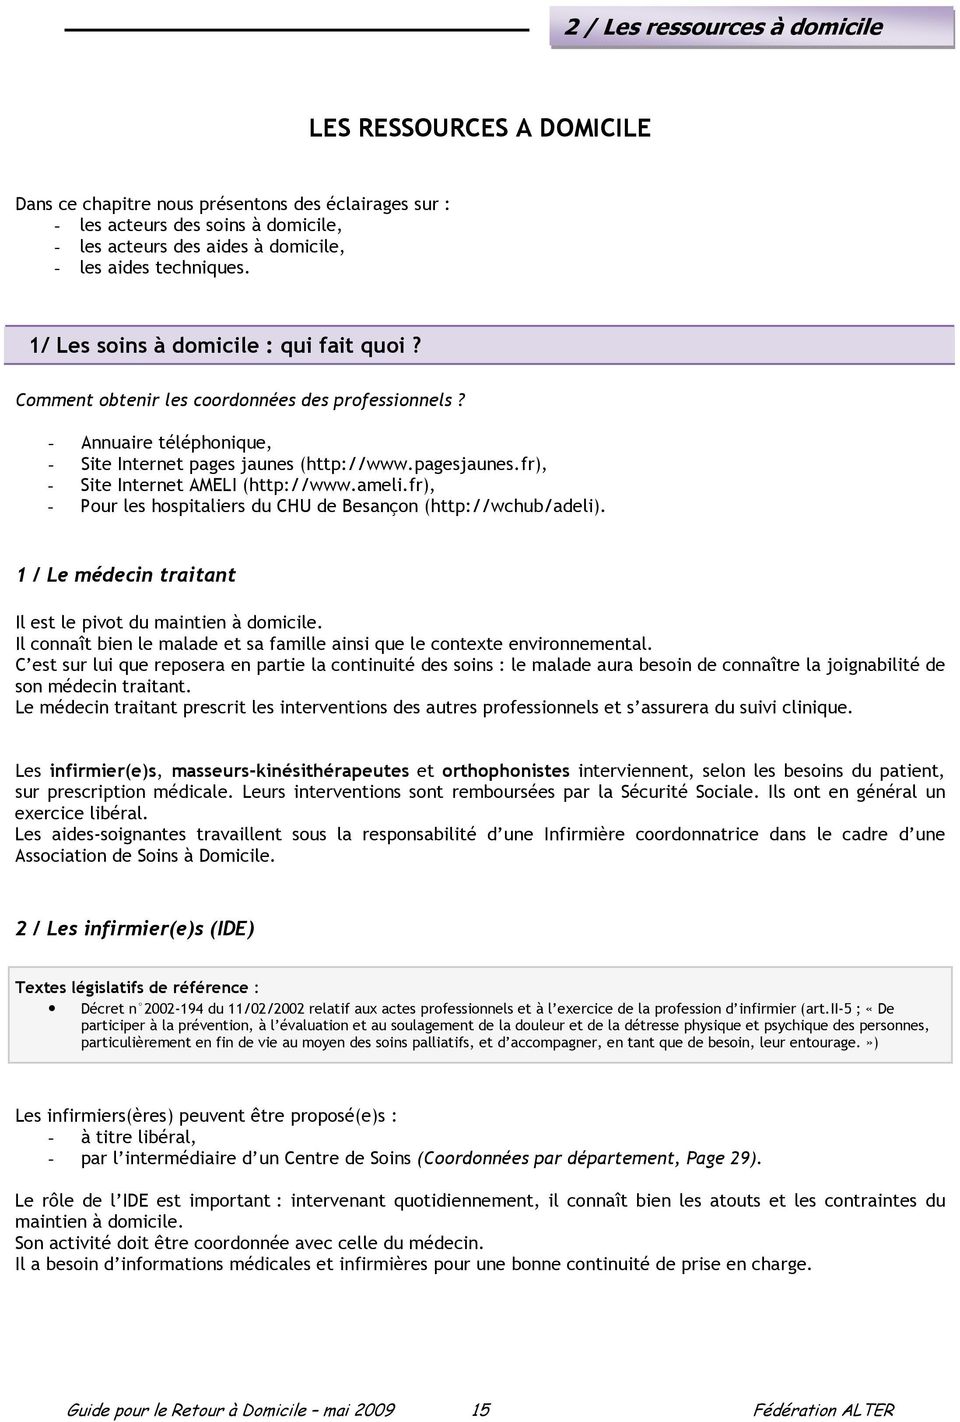 fr), - Site Internet AMELI (http://www.ameli.fr), - Pour les hospitaliers du CHU de Besançon (http://wchub/adeli). 1 / Le médecin traitant Il est le pivot du maintien à domicile.